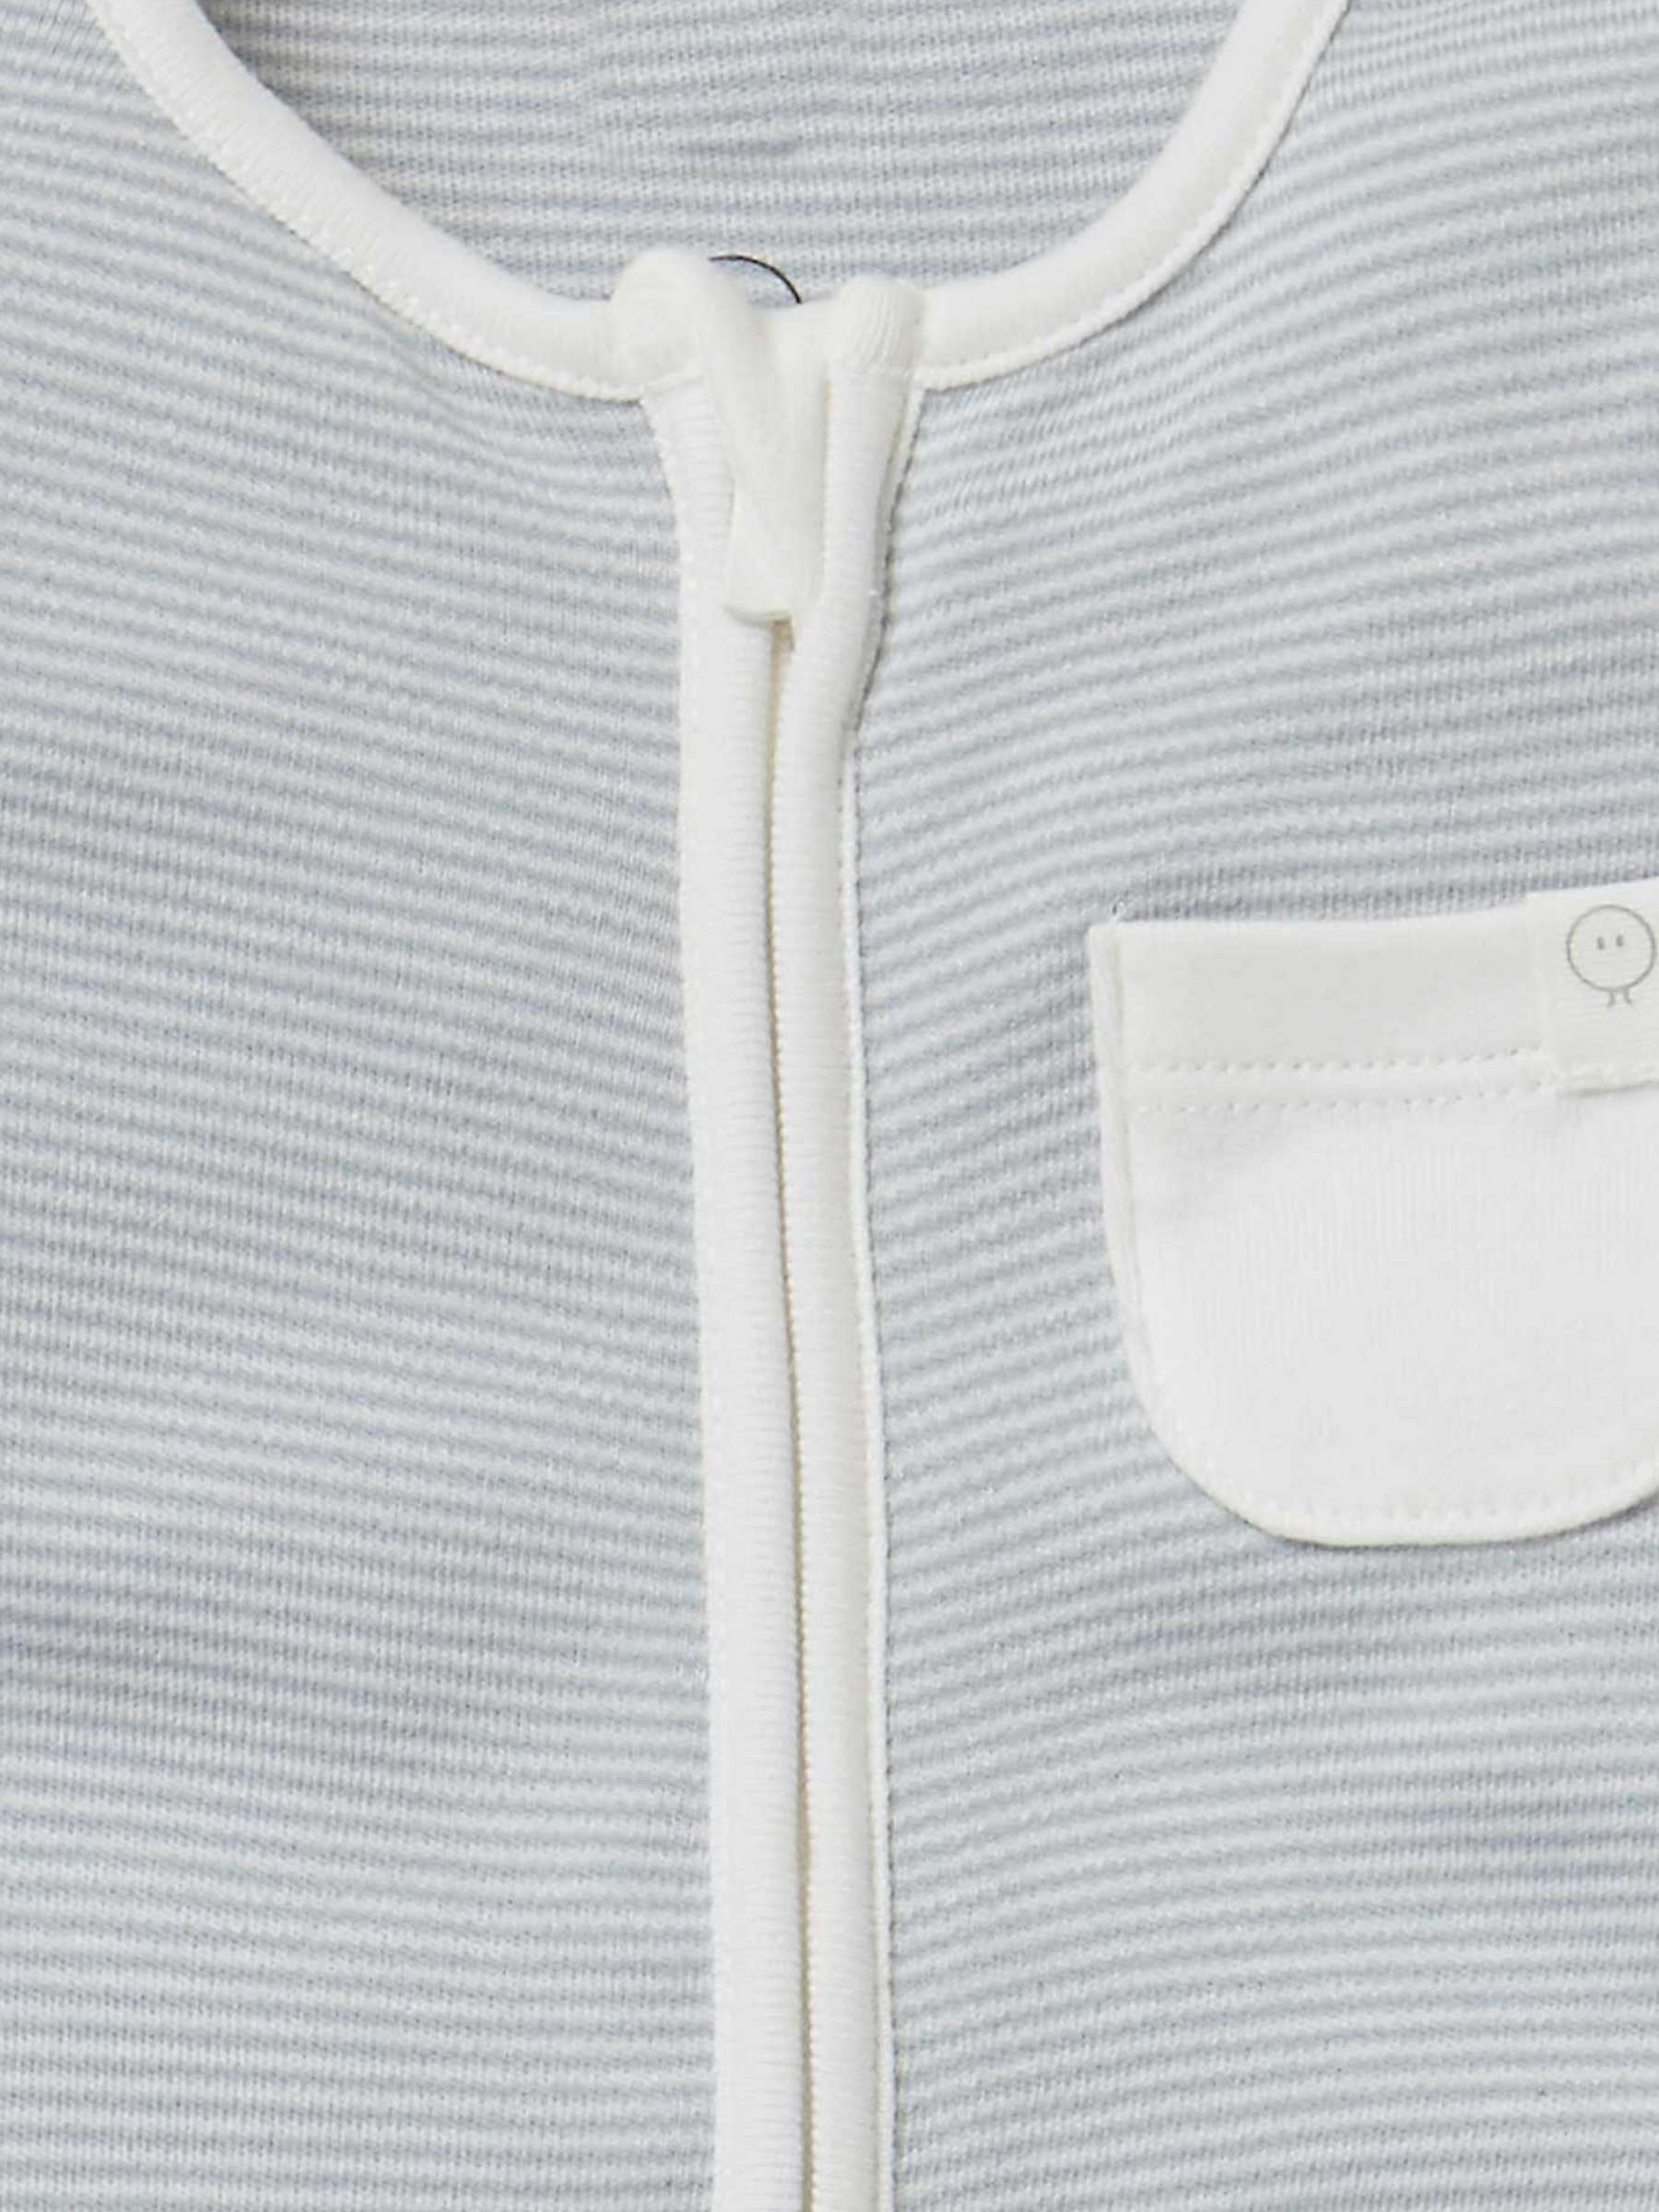 Buy MORI Baby Clever Zip Pocket Sleepsuit Online at johnlewis.com